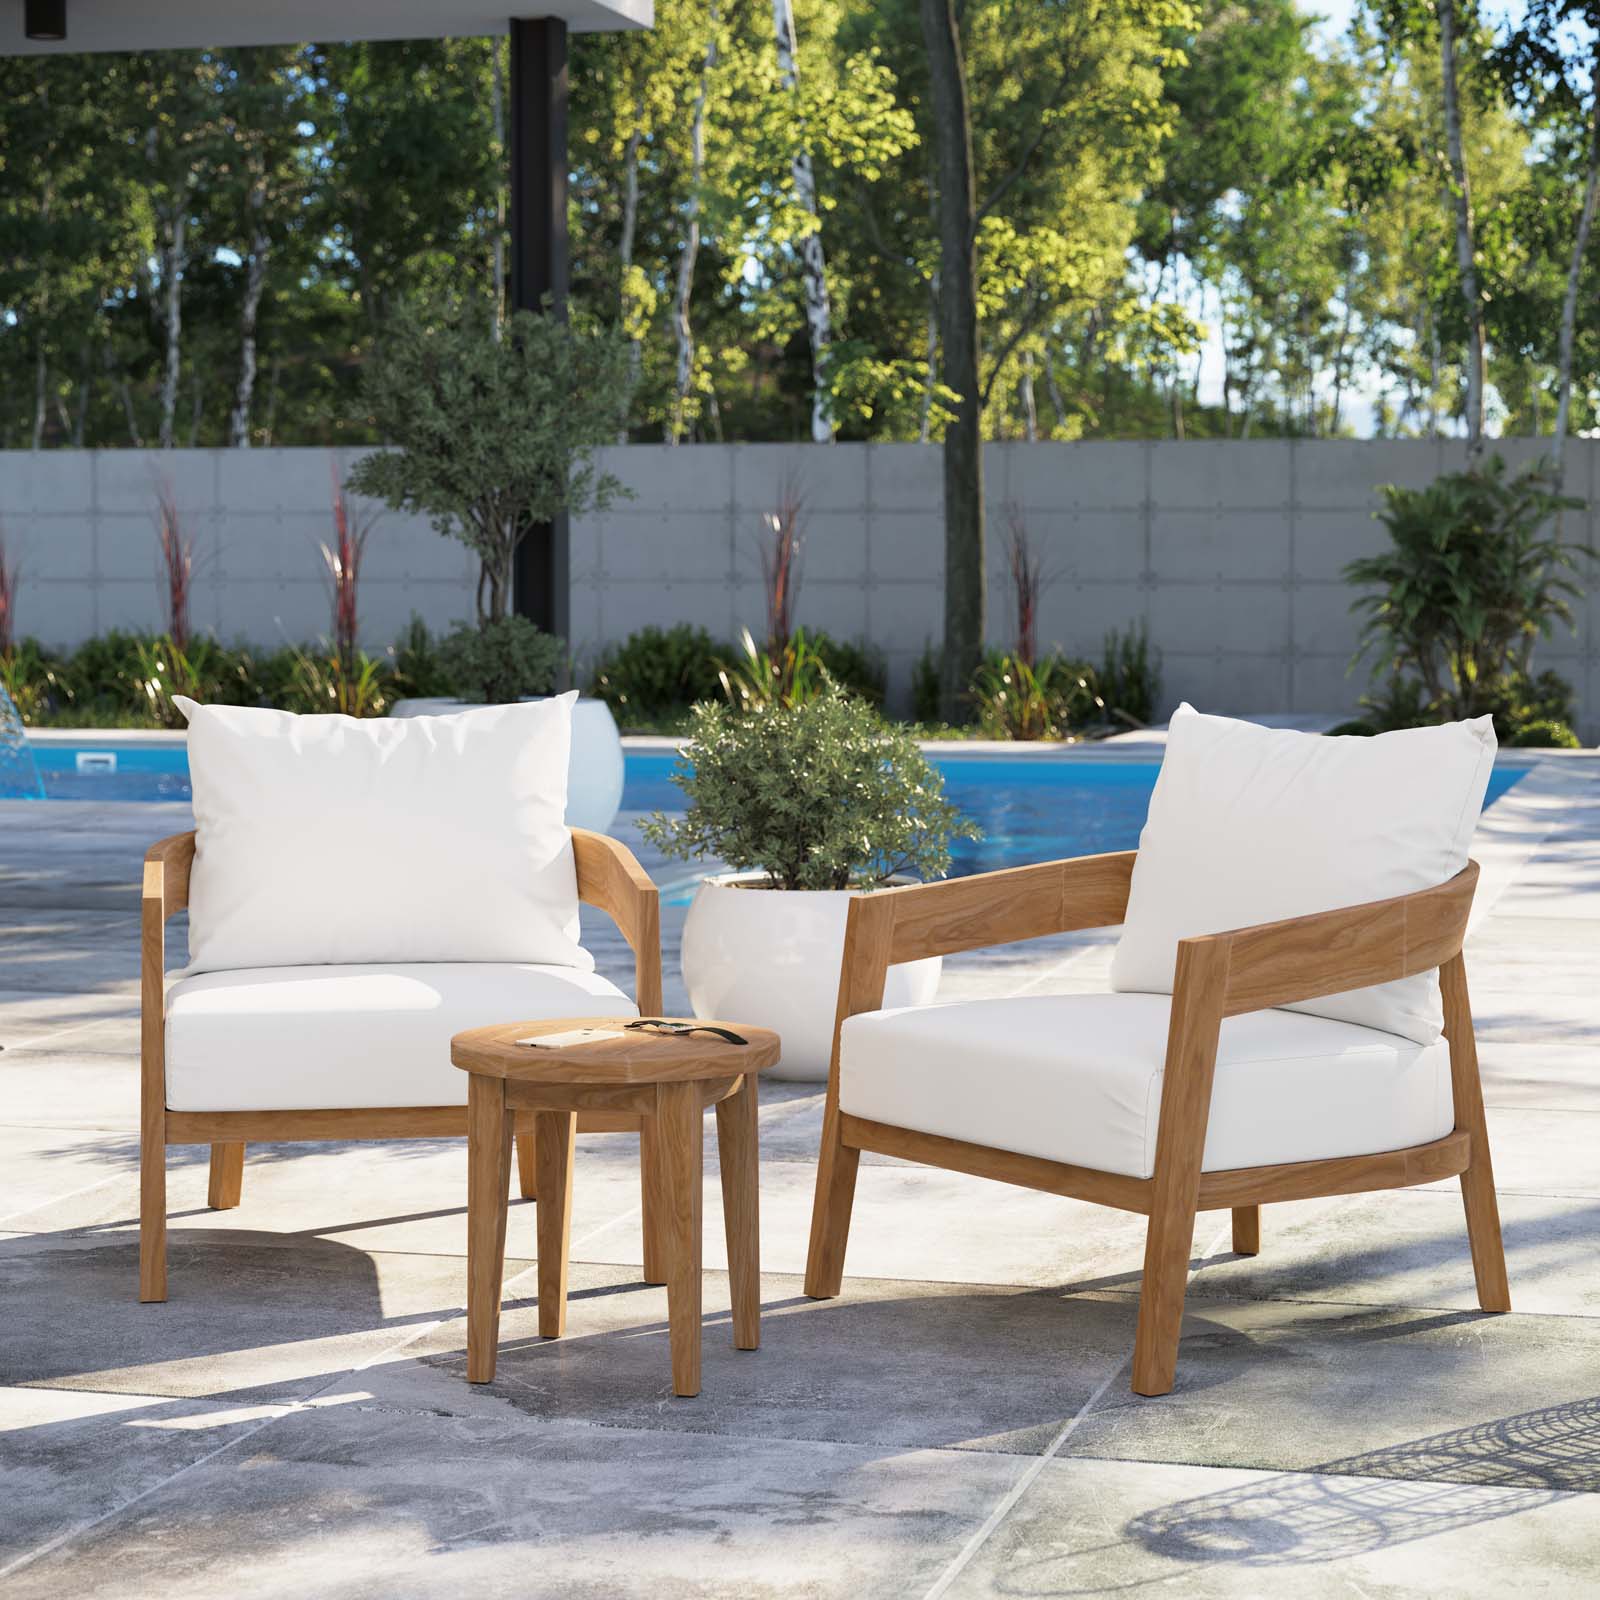 Modway Outdoor Conversation Sets - Brisbane 3-Piece Teak Wood Outdoor Patio Outdoor Patio Set Natural White